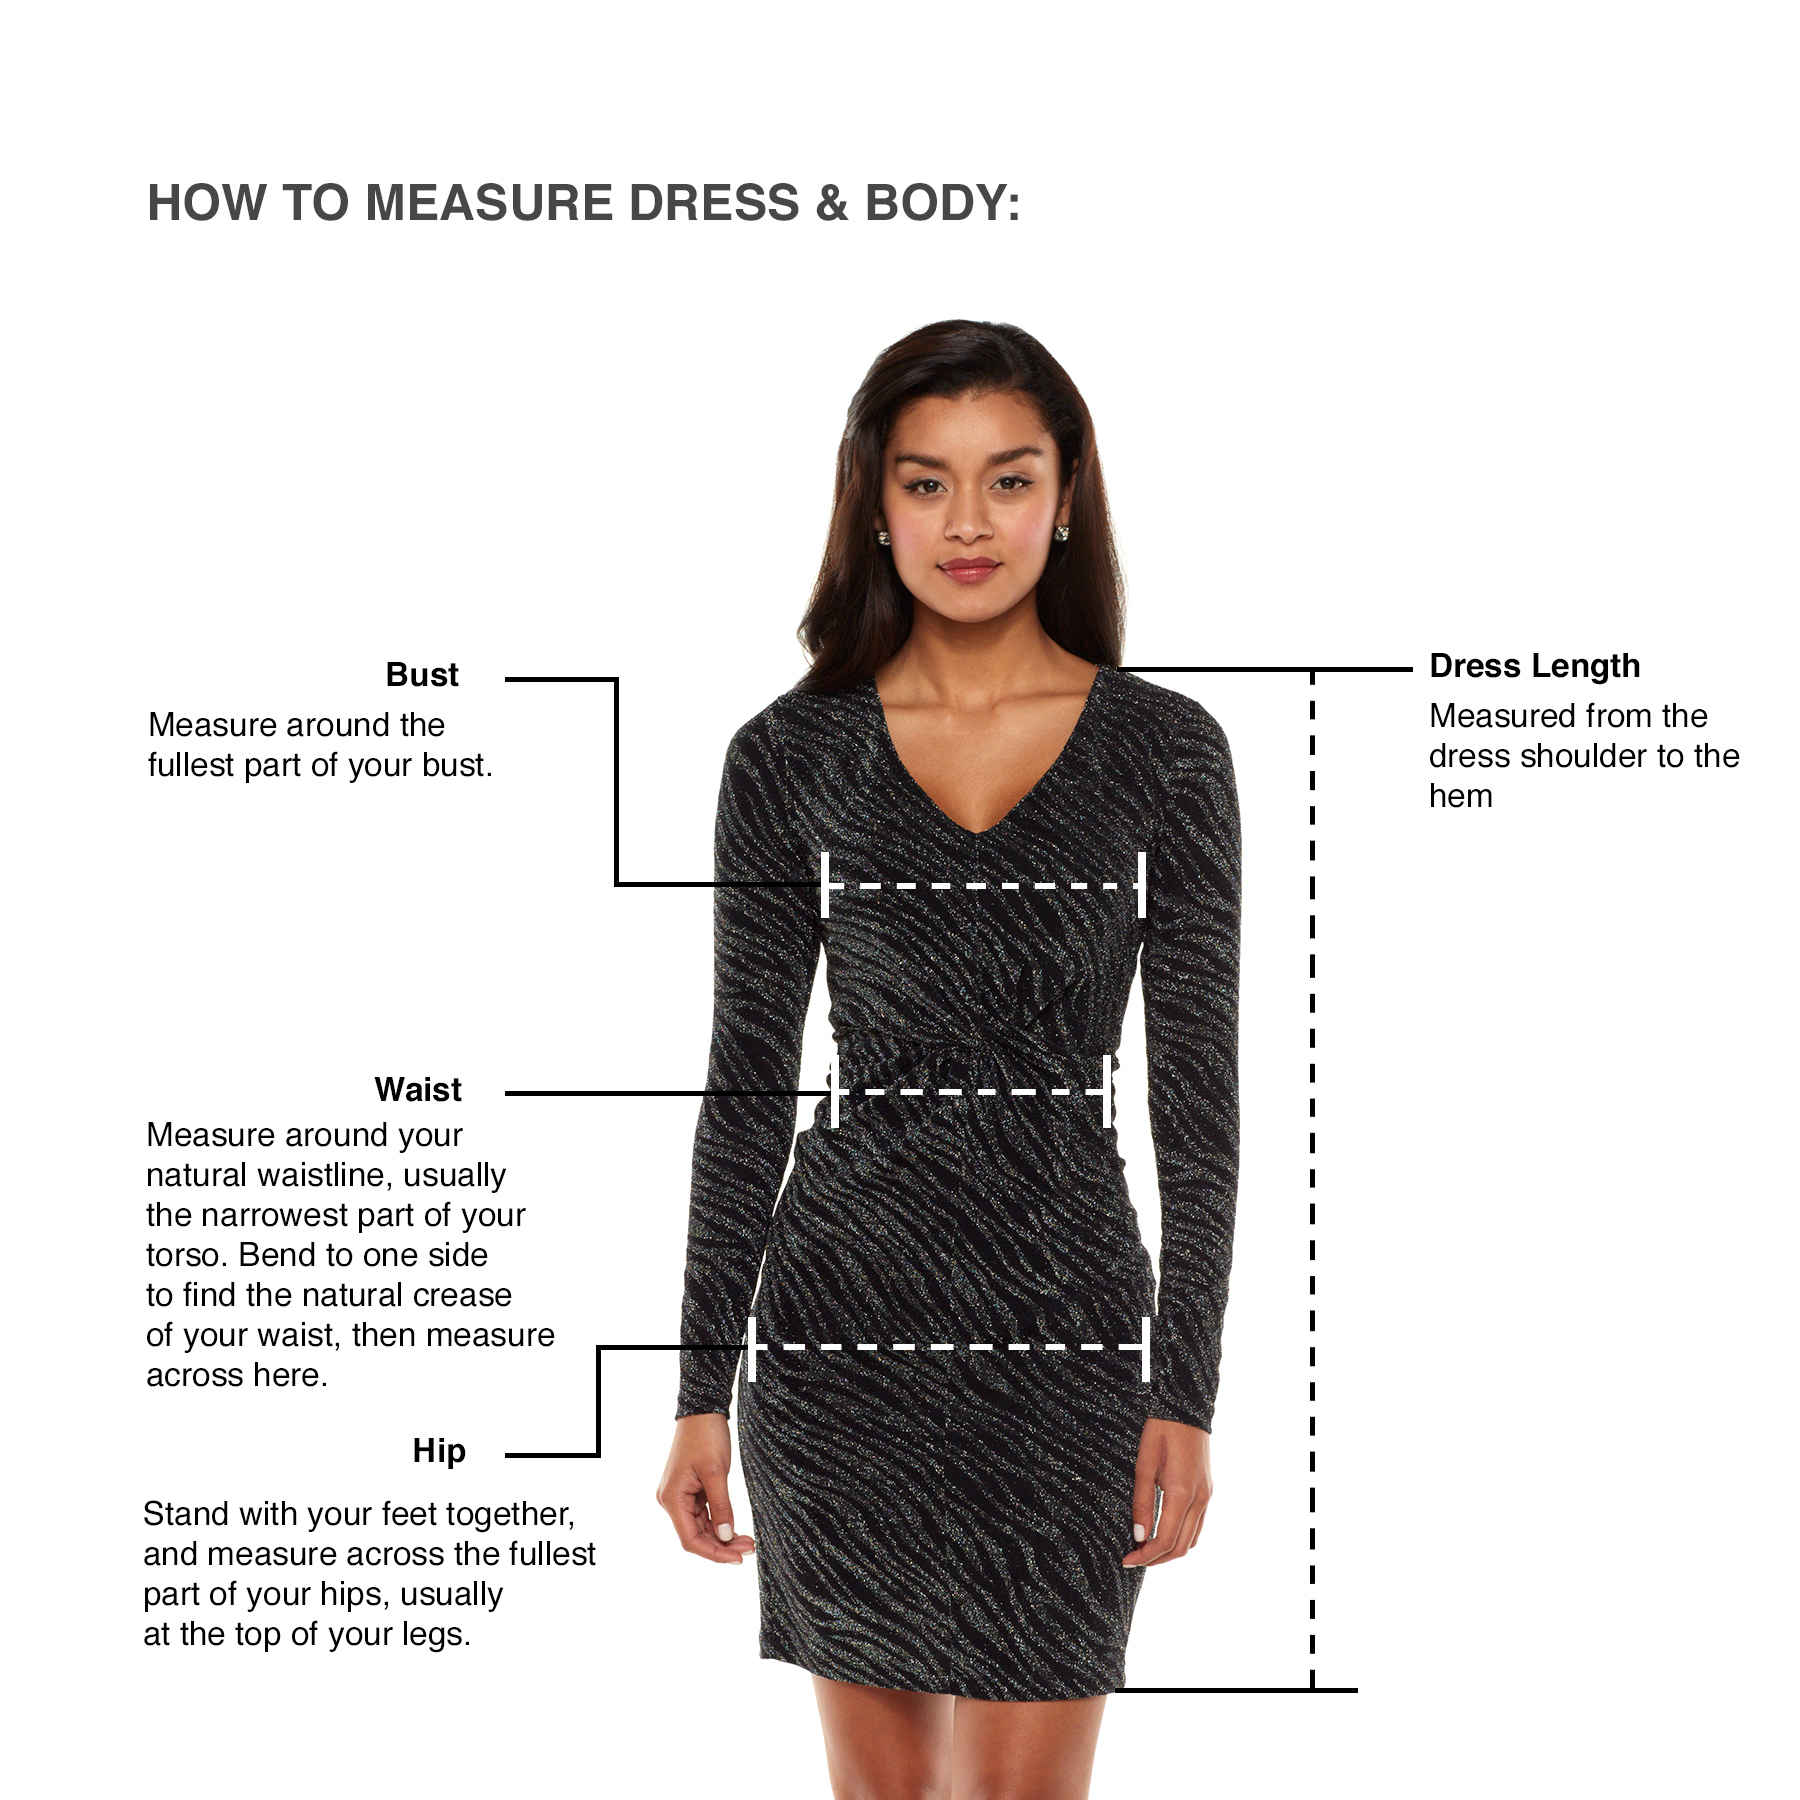 how-to-measure-dress-sleeve-length-dress-shirt-101-how-to-measure-a